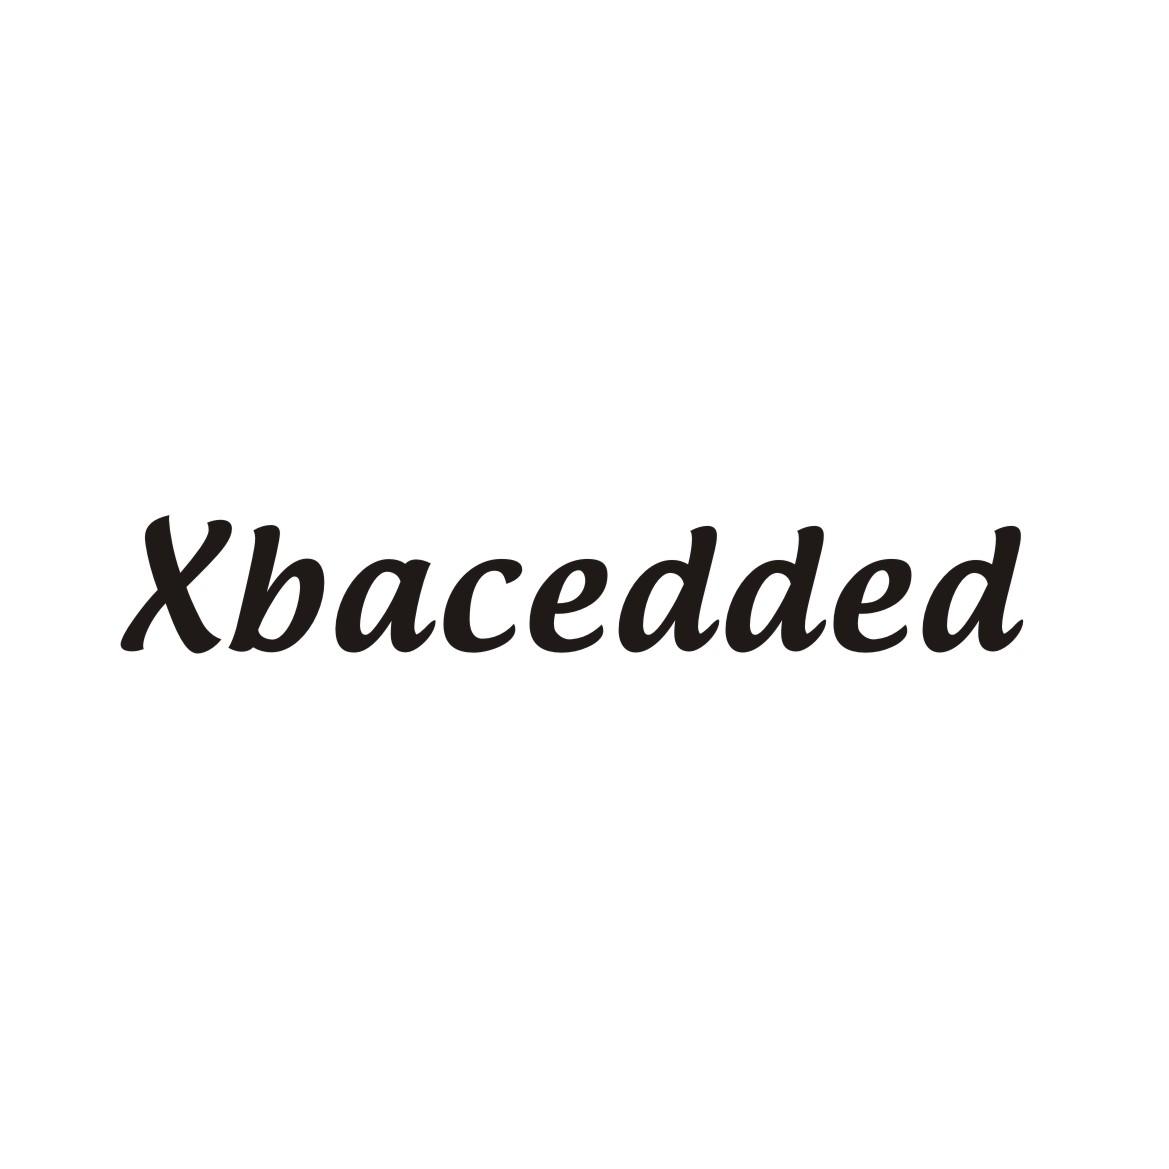 09类-科学仪器XBACEDDED商标转让